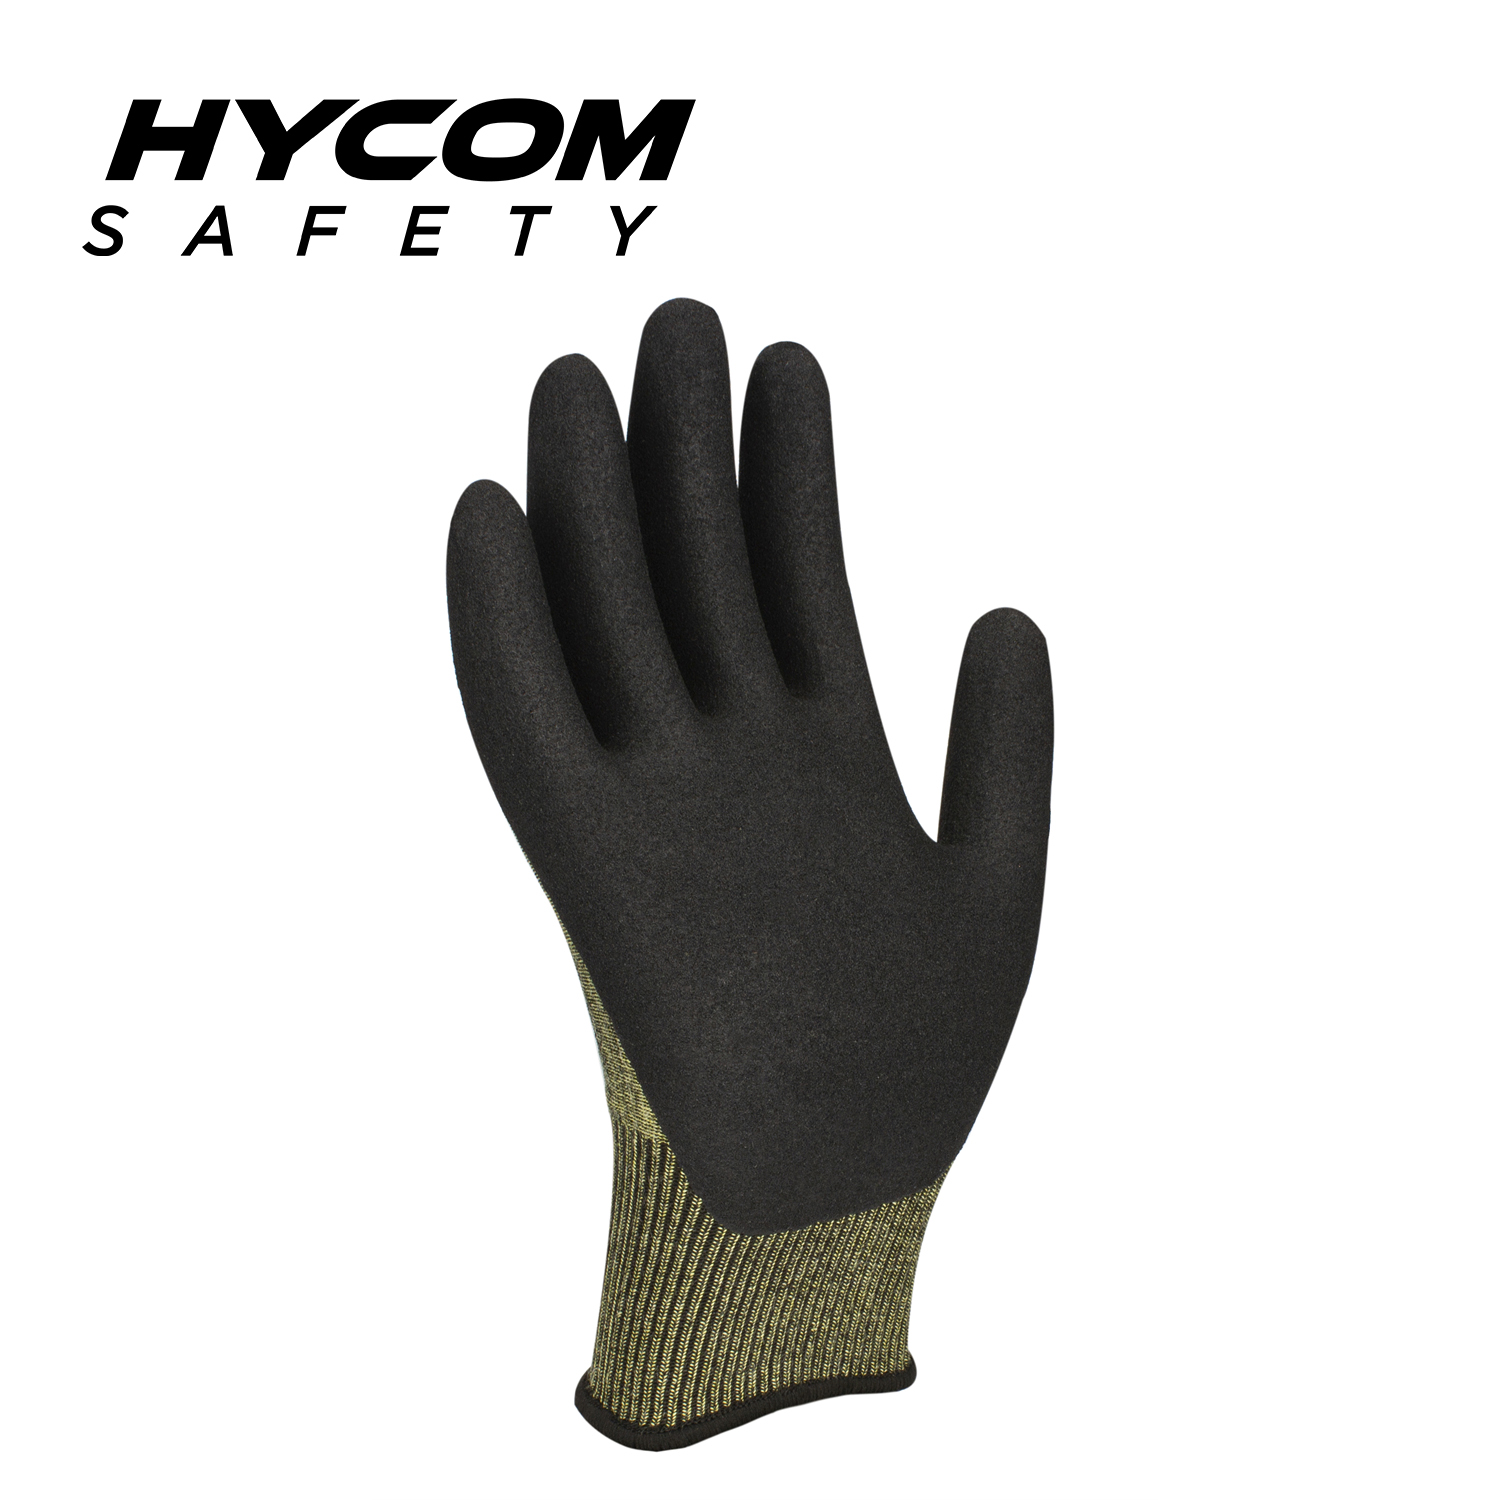 HYCOM 15G ANSI 4 Guantes de aramida resistentes a cortes recubiertos con espuma de nitrilo Guantes de trabajo de seguridad